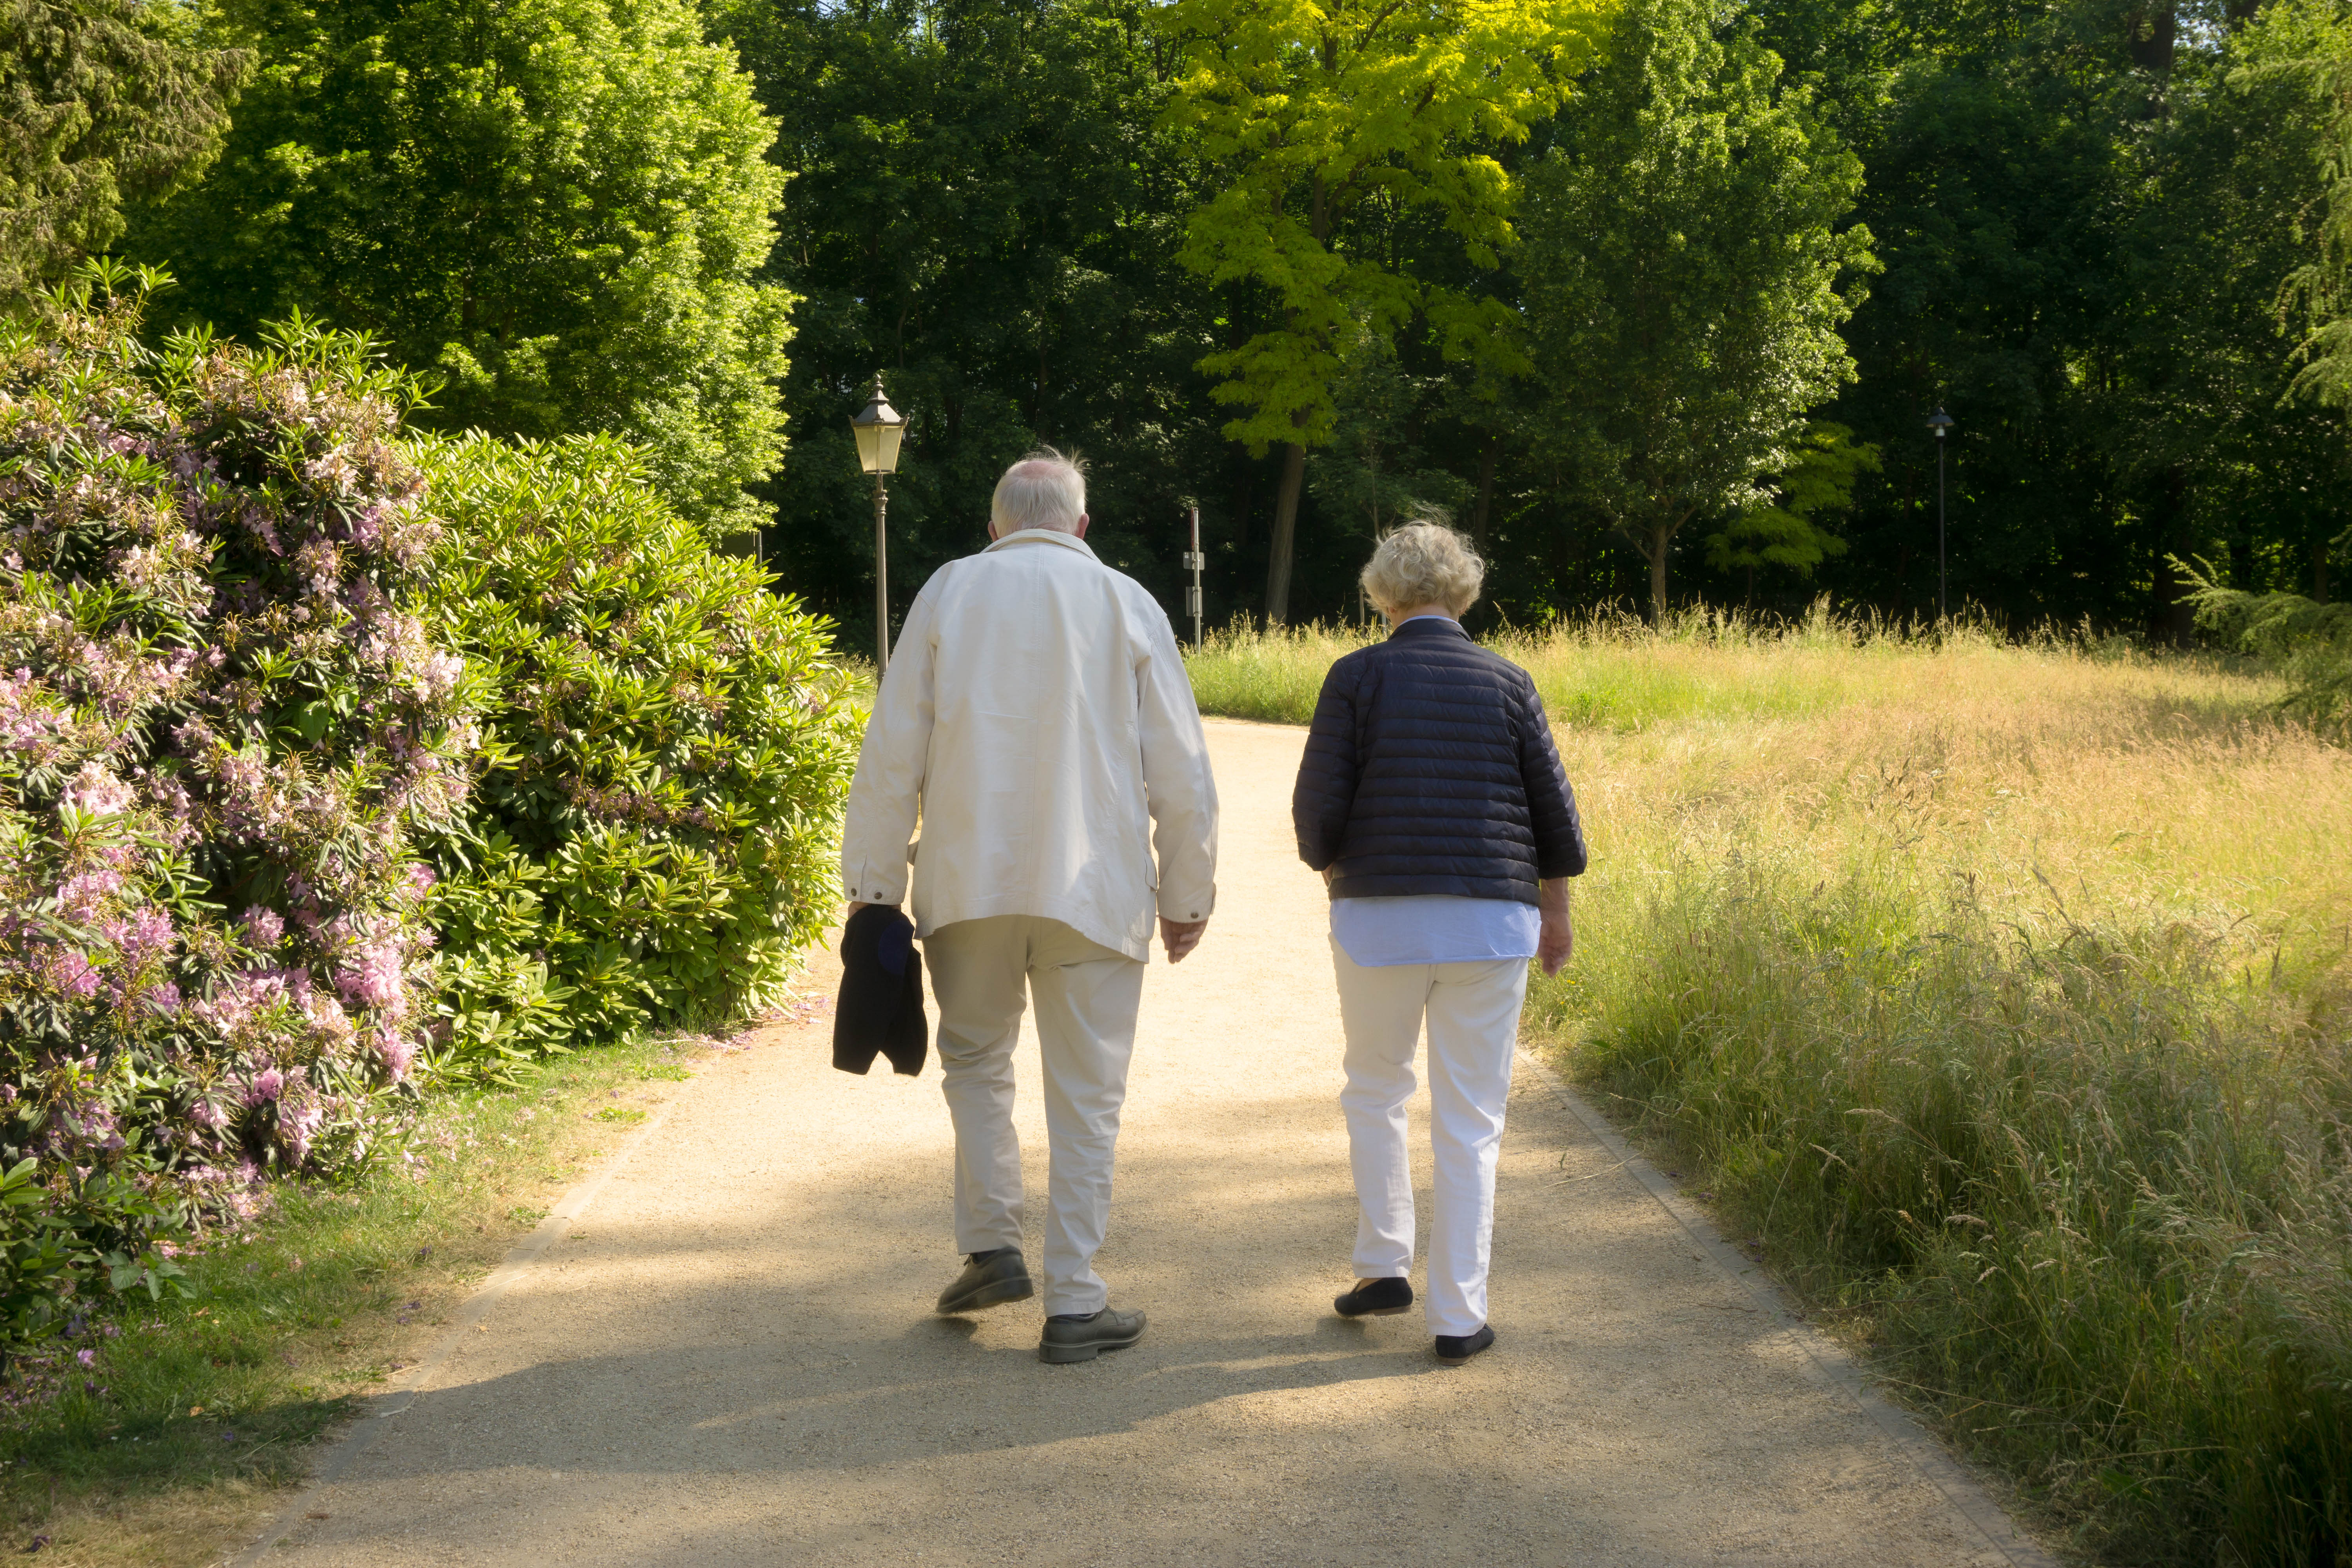 Elderly couple walking on a road. | Source: Shutterstock